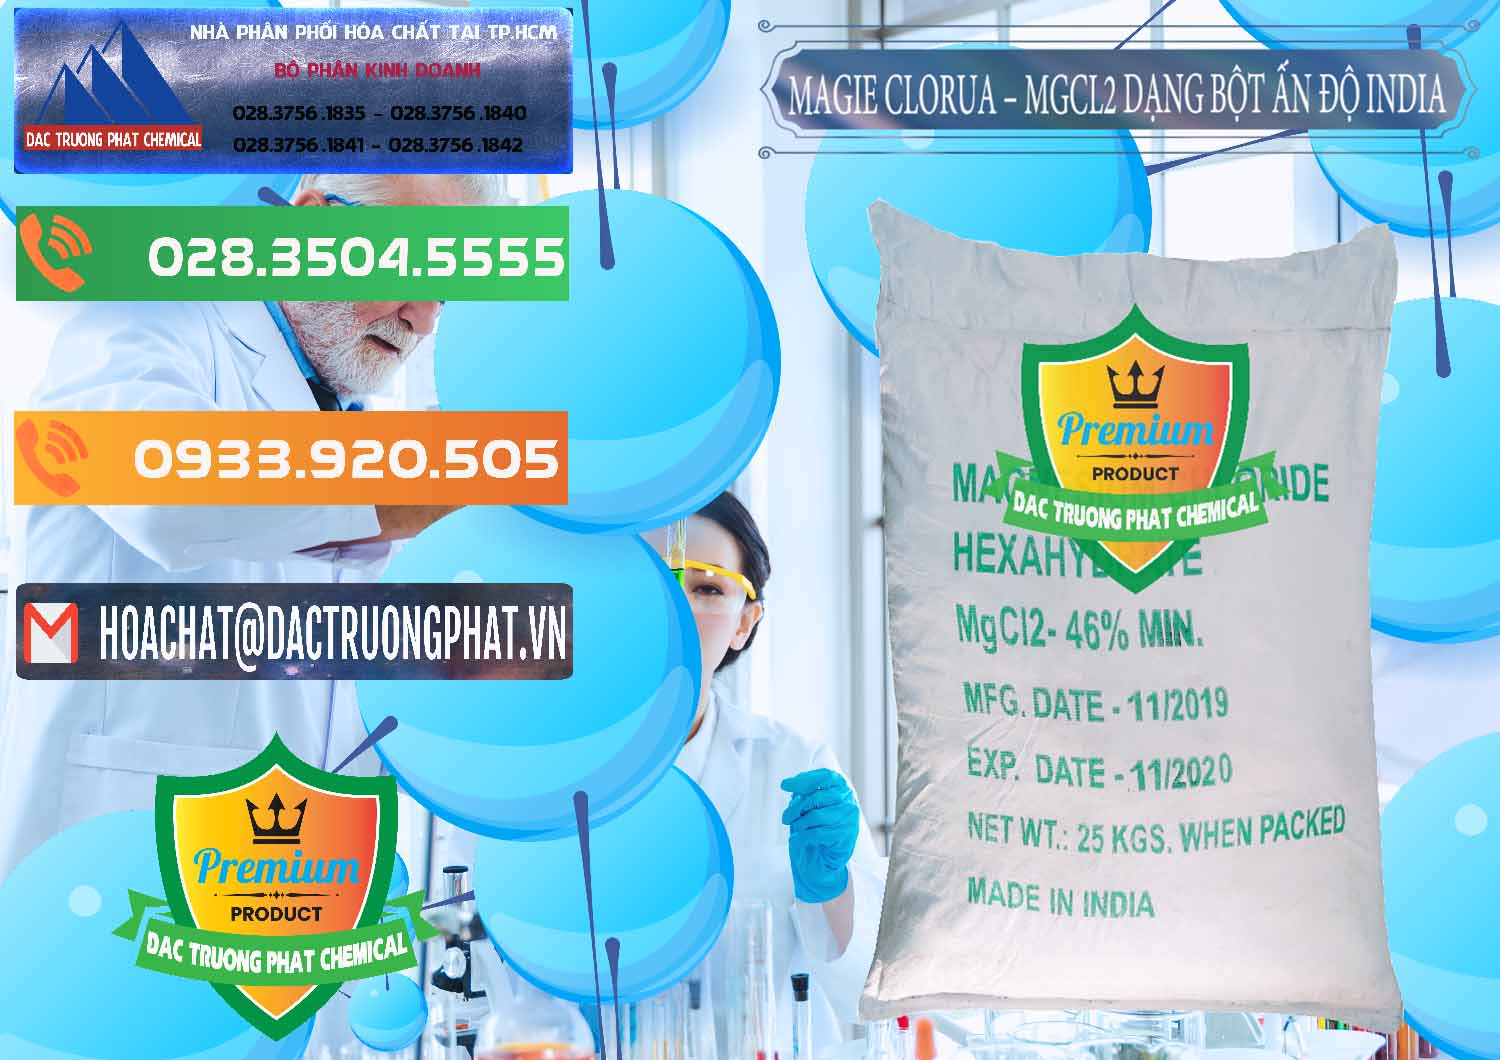 Cty kinh doanh _ bán Magie Clorua – MGCL2 96% Dạng Bột Ấn Độ India - 0206 - Nơi bán - phân phối hóa chất tại TP.HCM - hoachatxulynuoc.com.vn